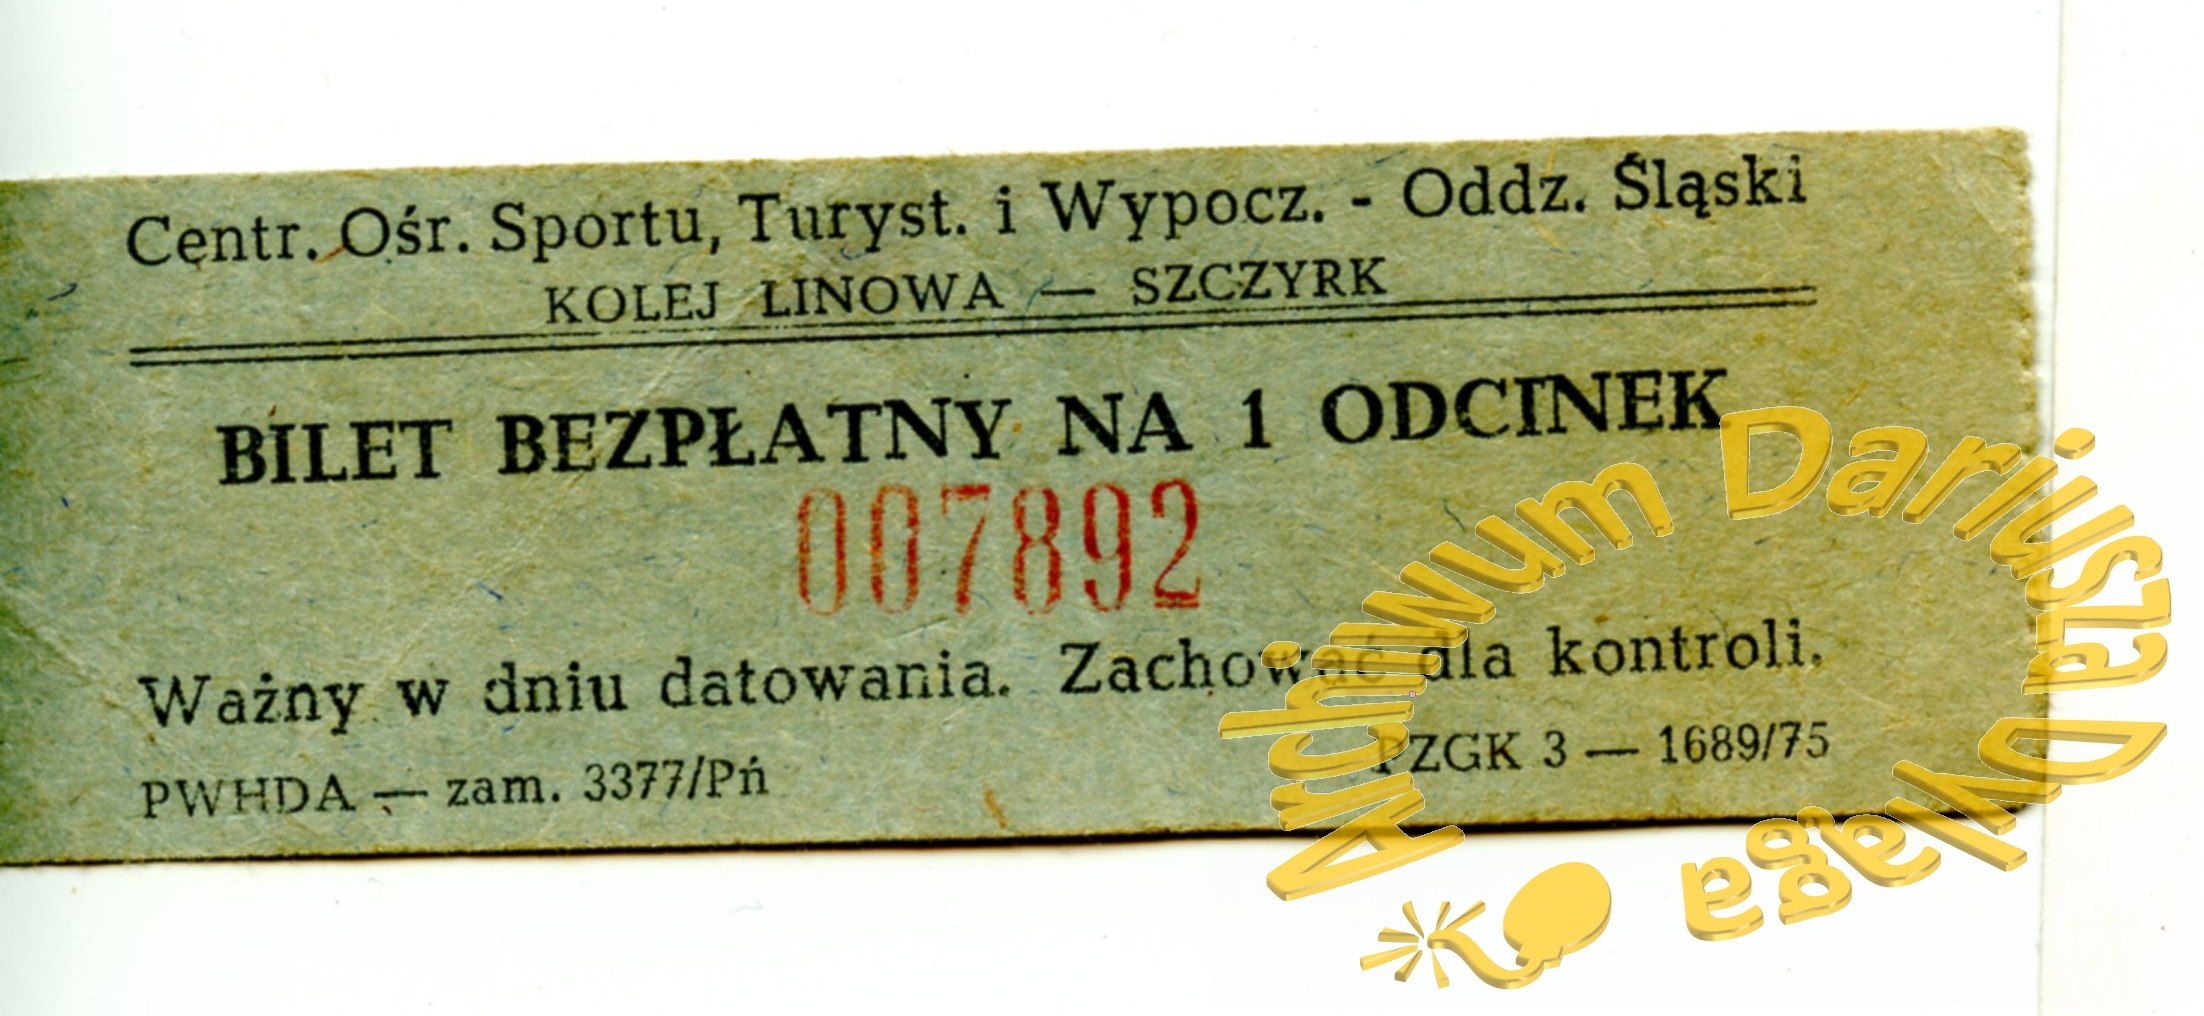 1994-bilet-szczyrk